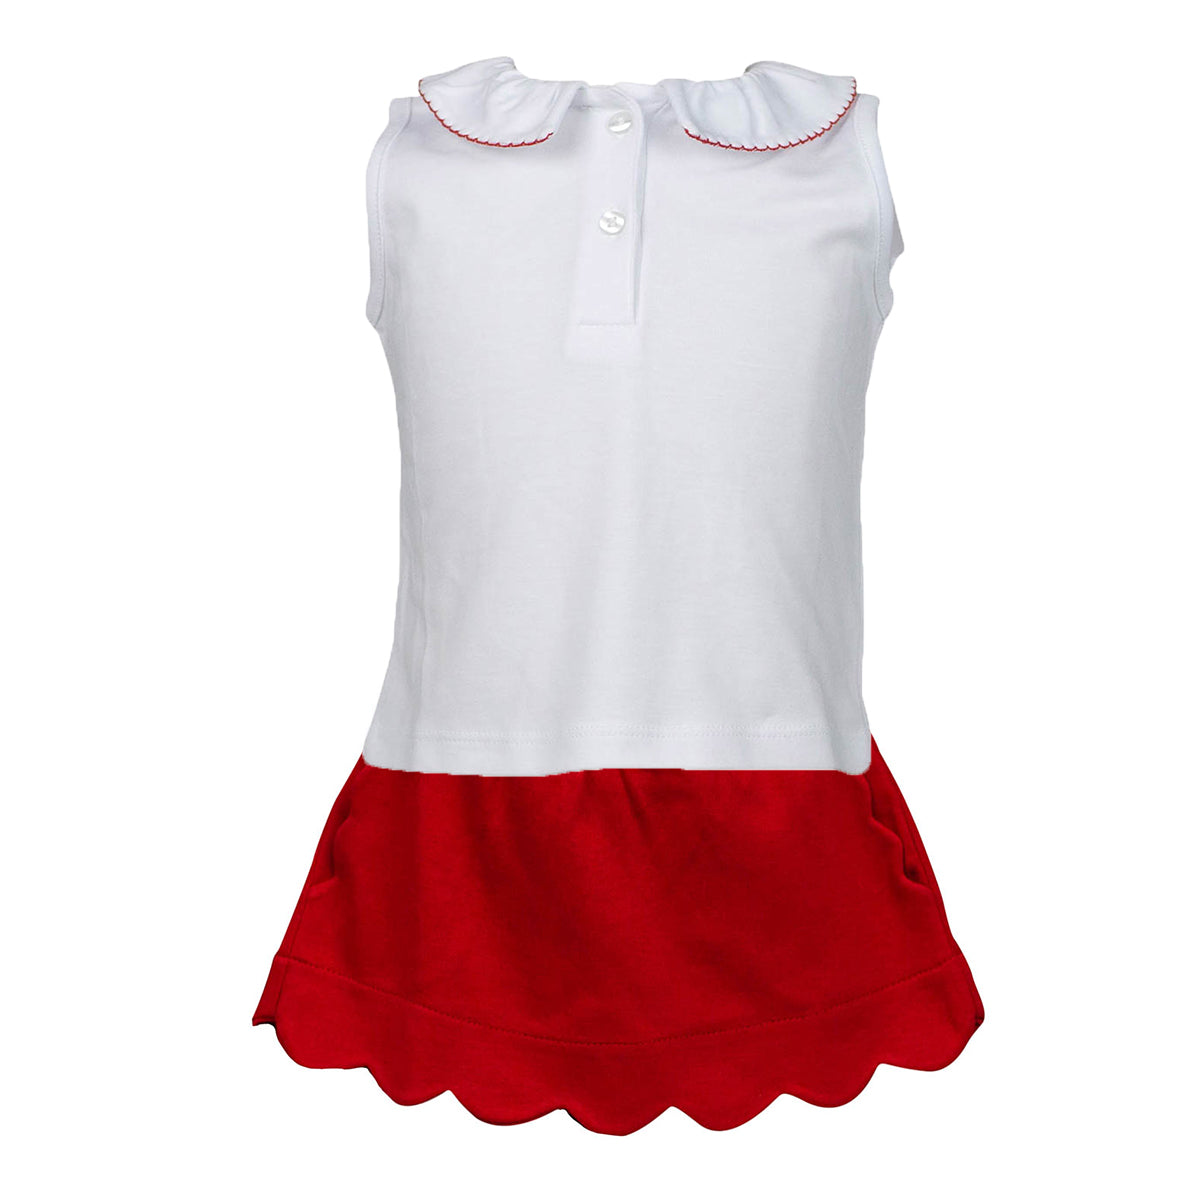 Red Scalloped Skirt Set